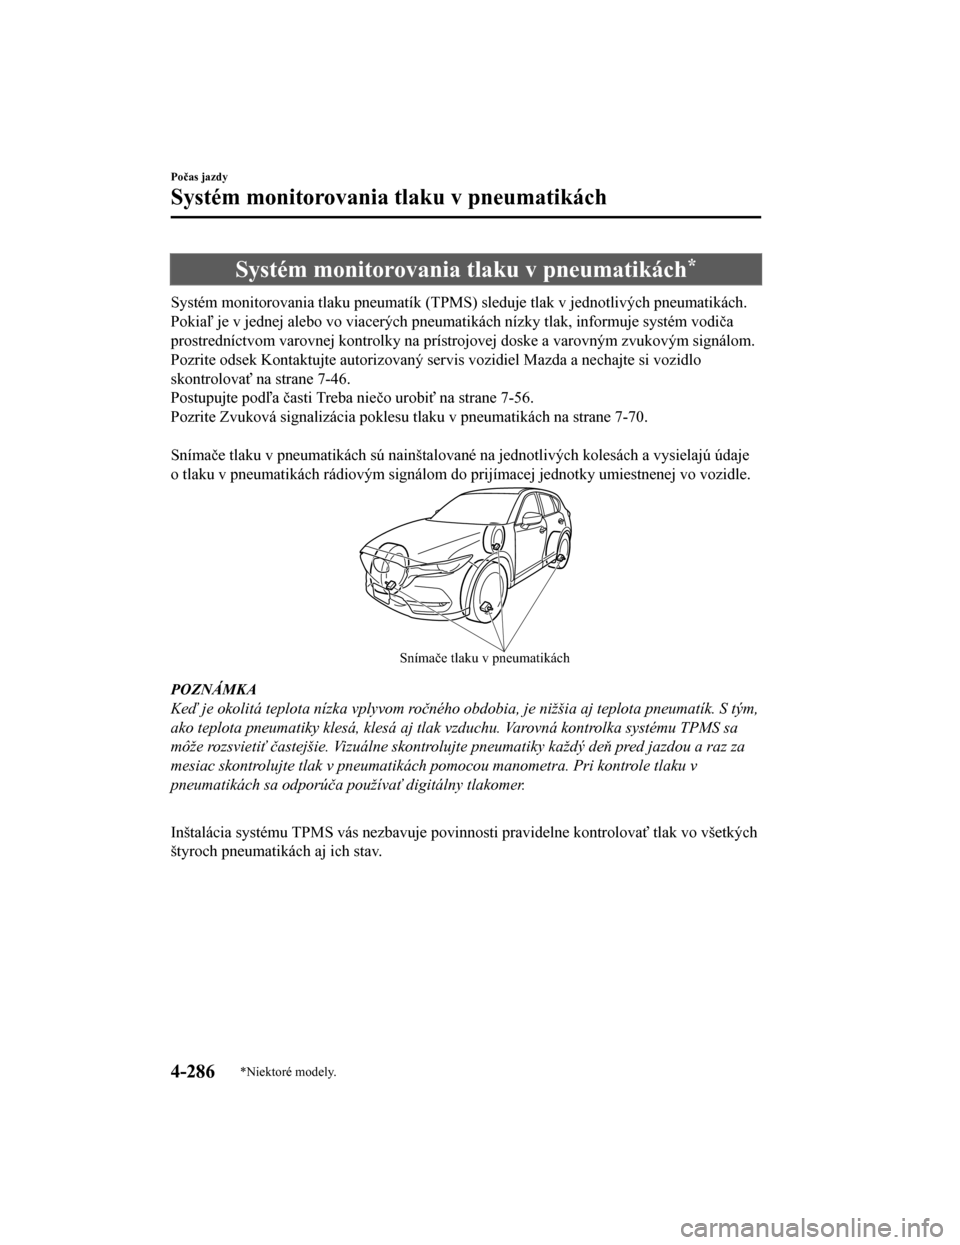 MAZDA MODEL CX-5 2019  Užívateľská príručka (in Slovak) Systém monitorovania tlaku v pneumatikách*
Systém monitorovania tlaku pneumatík (TPMS) sleduje tlak v jednotlivých pneumatikách.
Pokiaľ je v jednej alebo vo viacerých pneumatikách nízky tlak